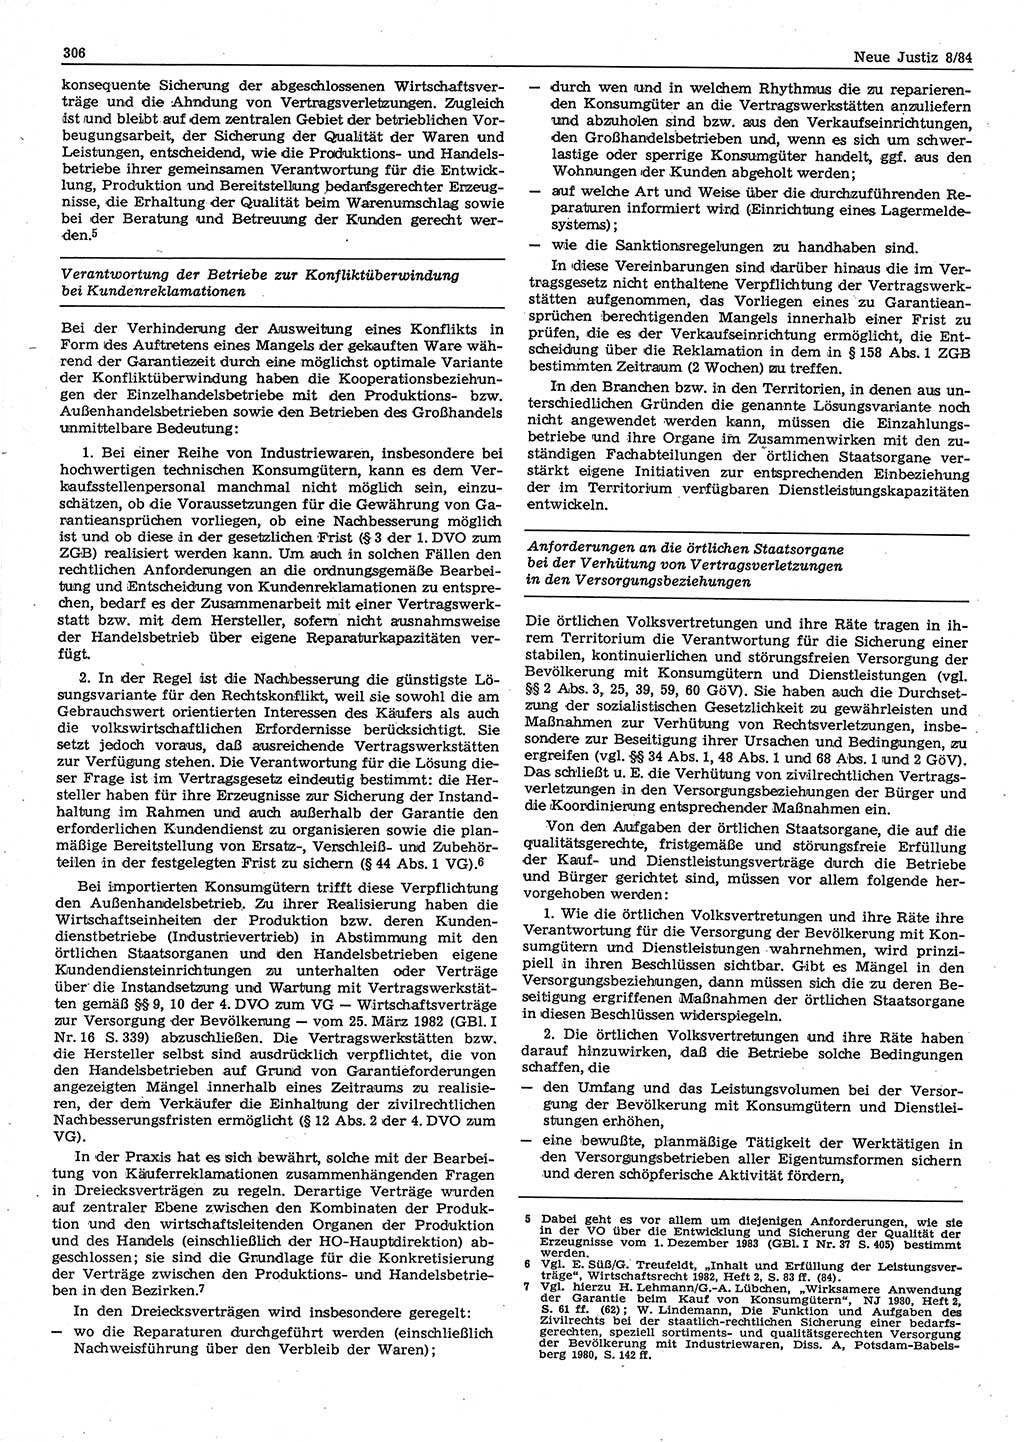 Neue Justiz (NJ), Zeitschrift für sozialistisches Recht und Gesetzlichkeit [Deutsche Demokratische Republik (DDR)], 38. Jahrgang 1984, Seite 306 (NJ DDR 1984, S. 306)